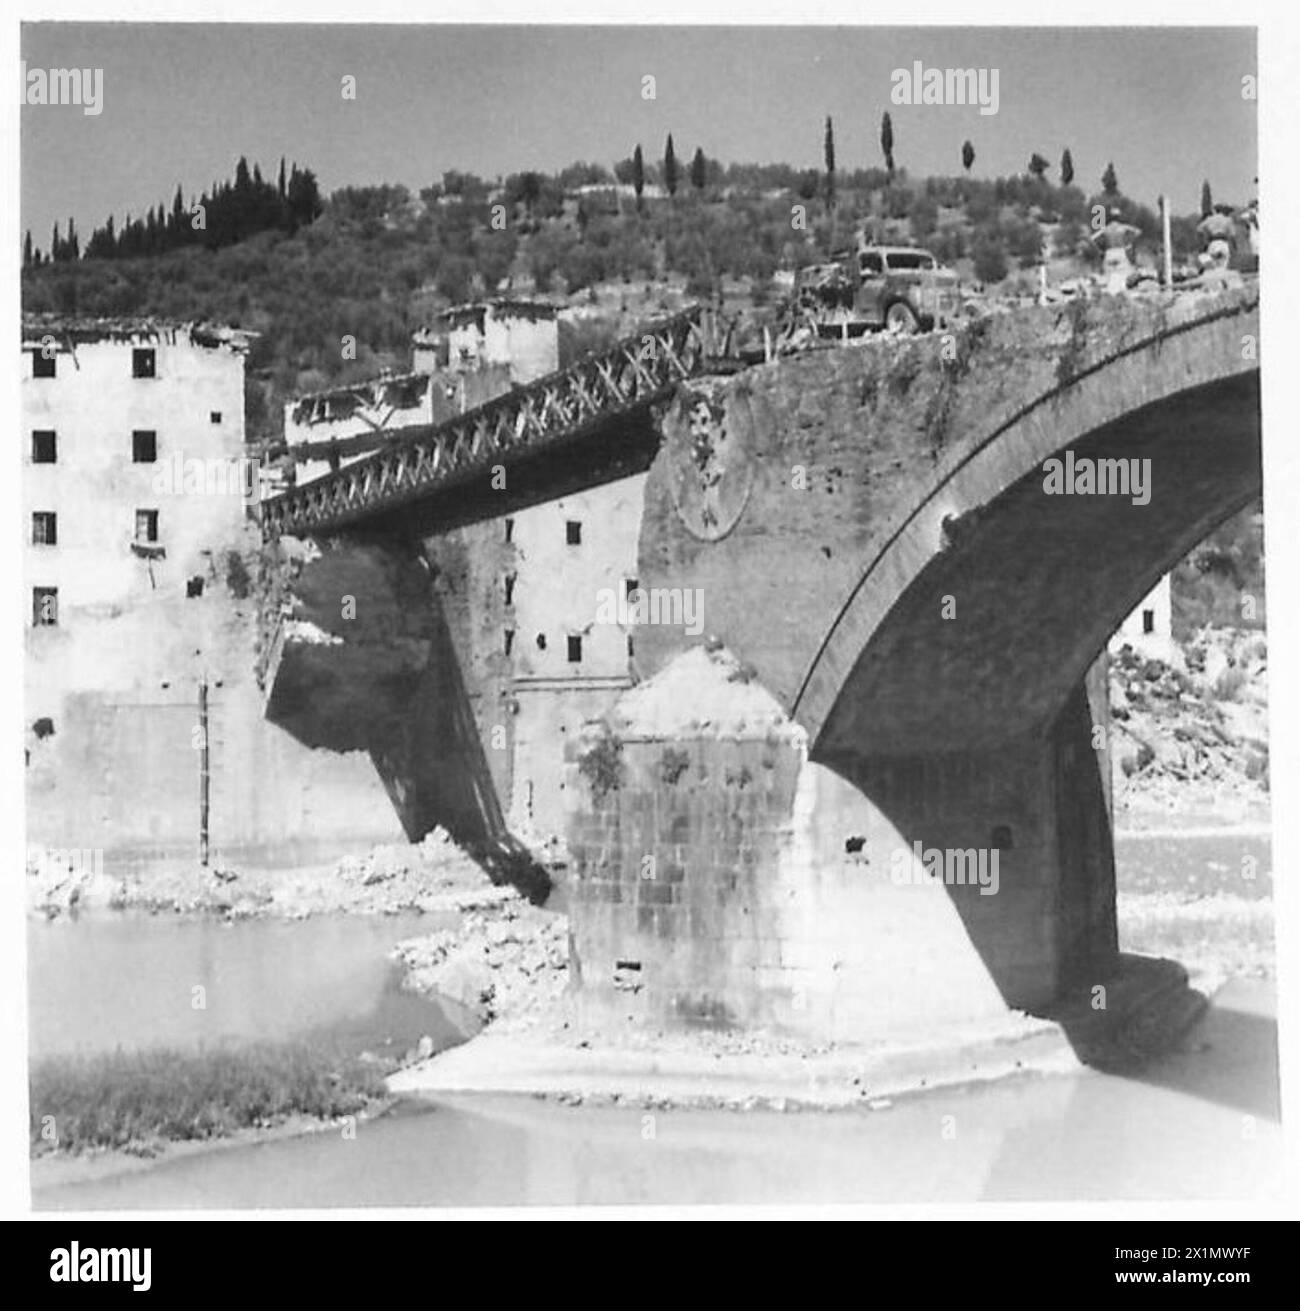 L'OTTAVO ESERCITO PRENDE PONTASSIEVE, l'arco del ponte soffiato sull'Arno a Pontassieve, British Army Foto Stock